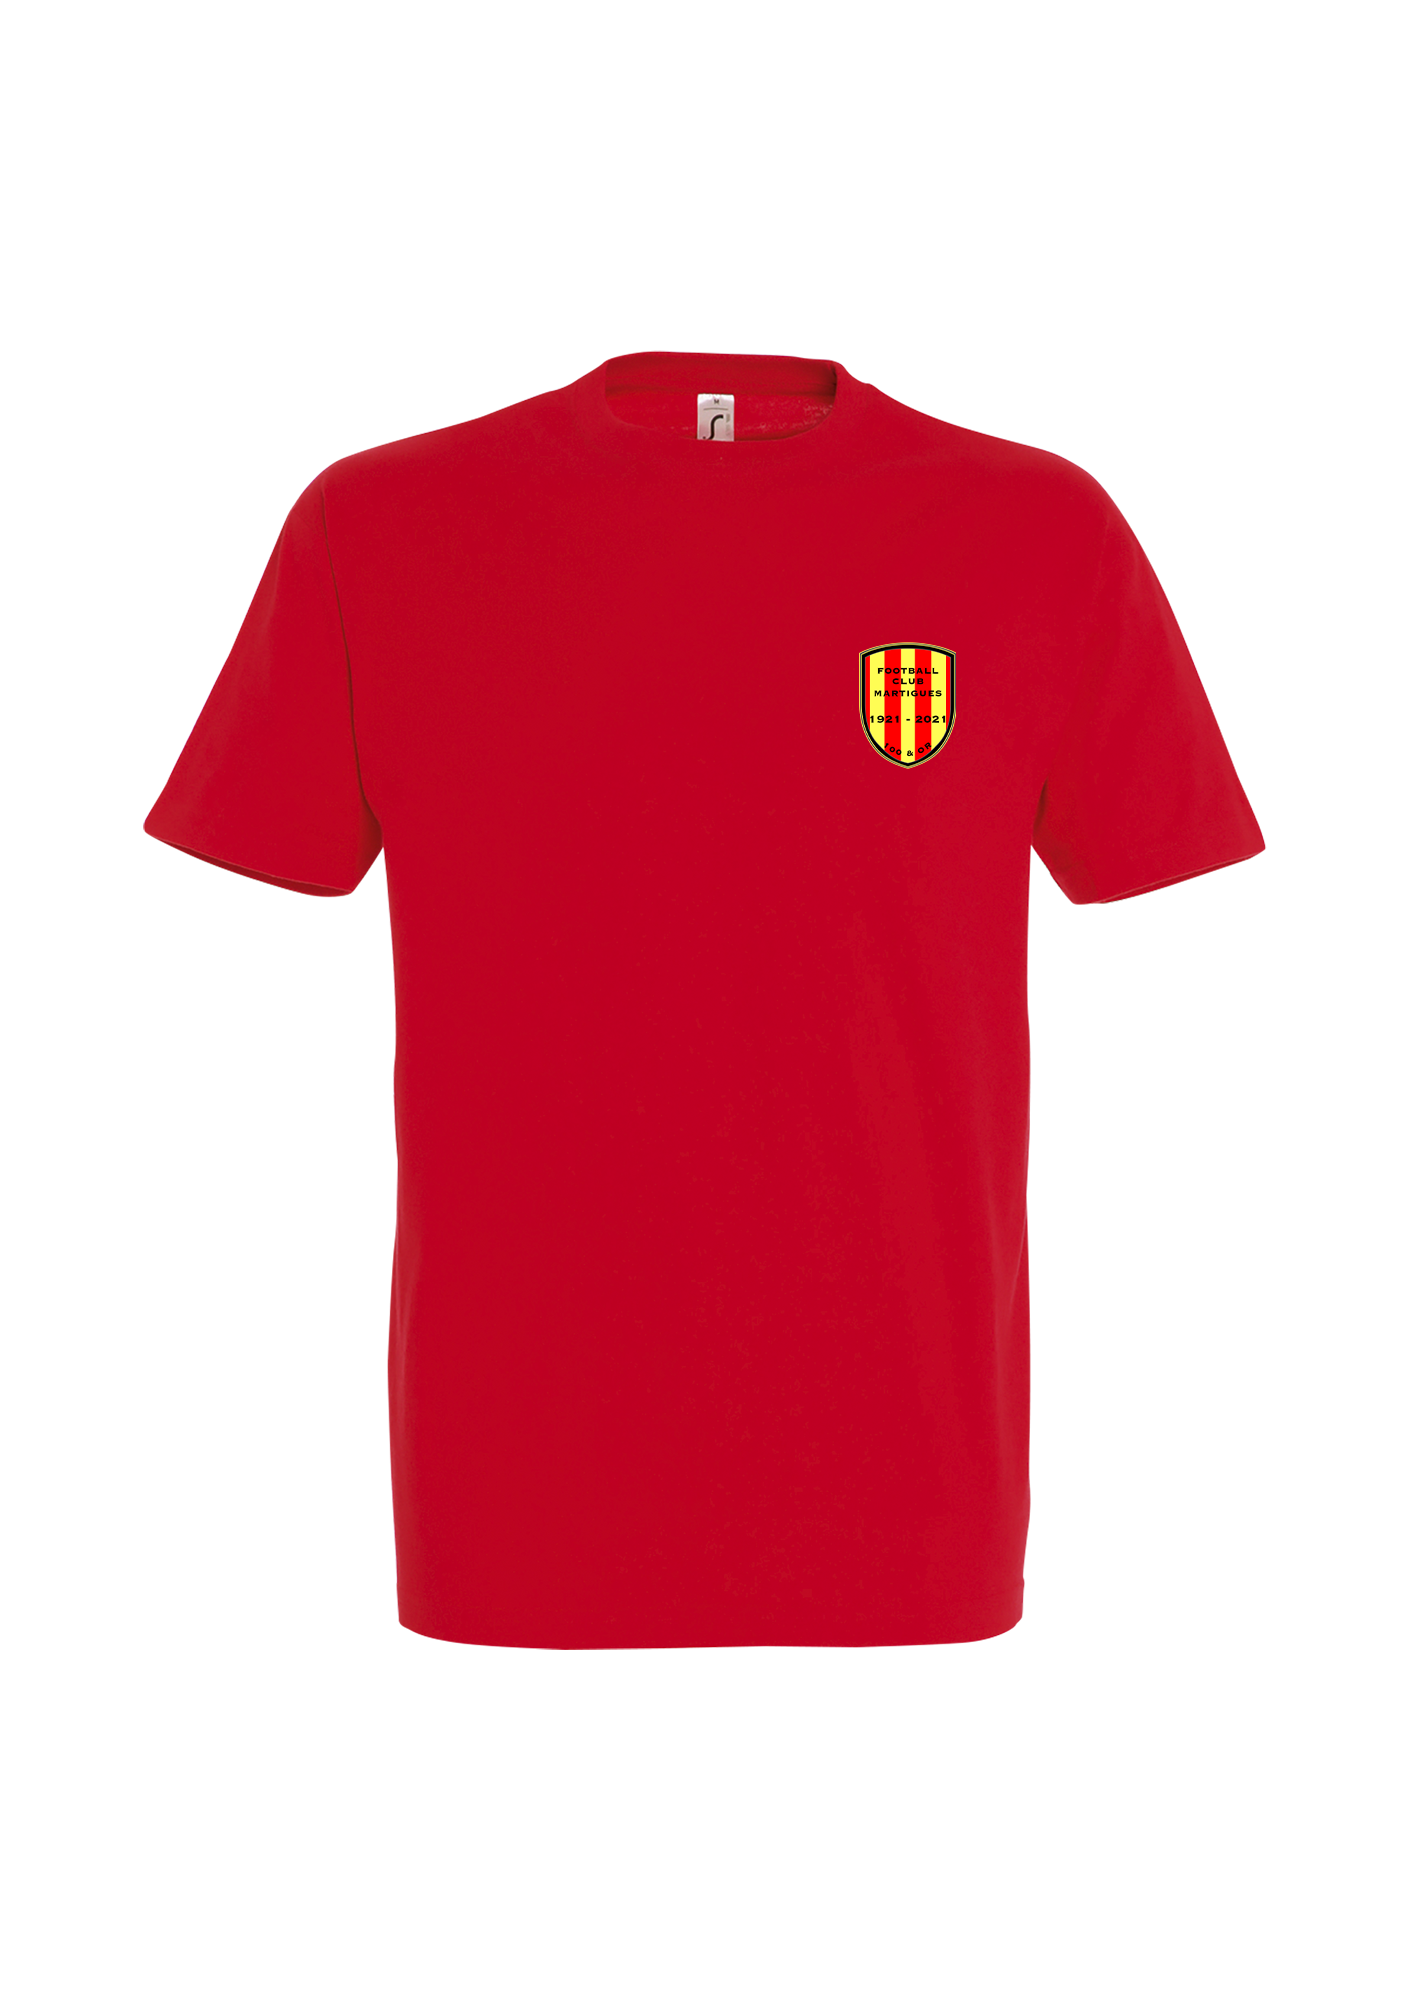 T-shirt Homme premium "100 et Or" Rouge - pn11500145A